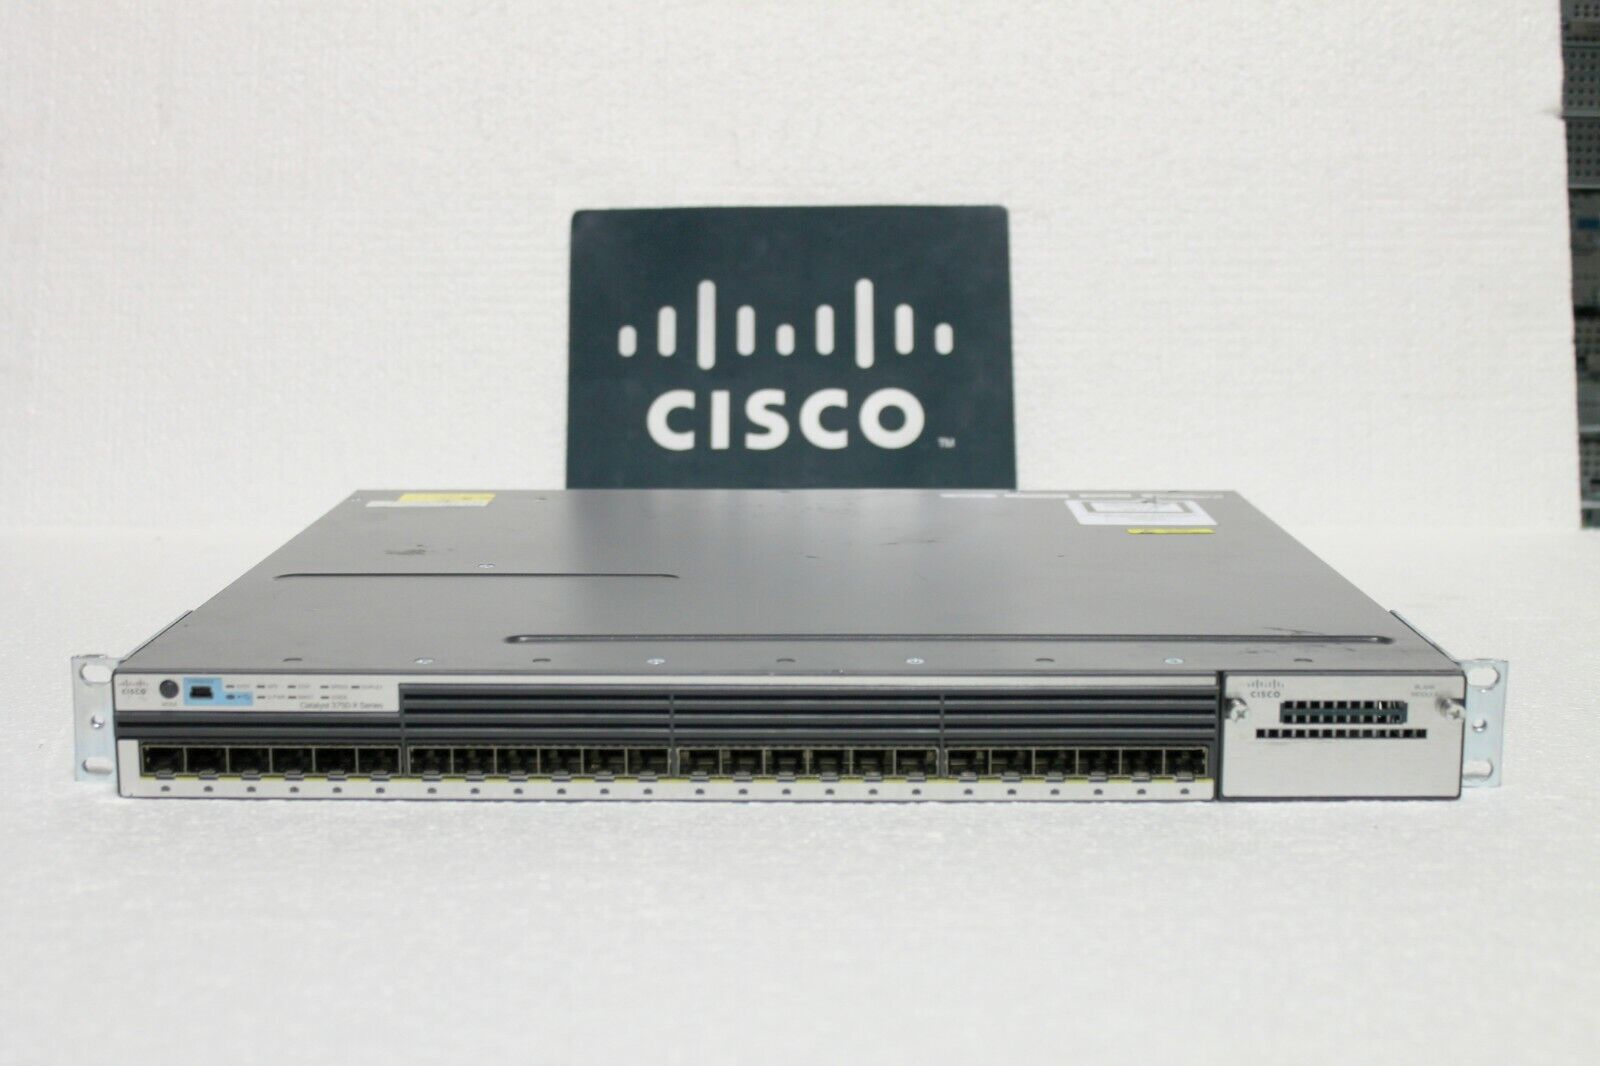 Cisco Catalyst 3750X WS-C3750X-24S-S 24-Port GbE SFP ipbase Switch W-SINGLE